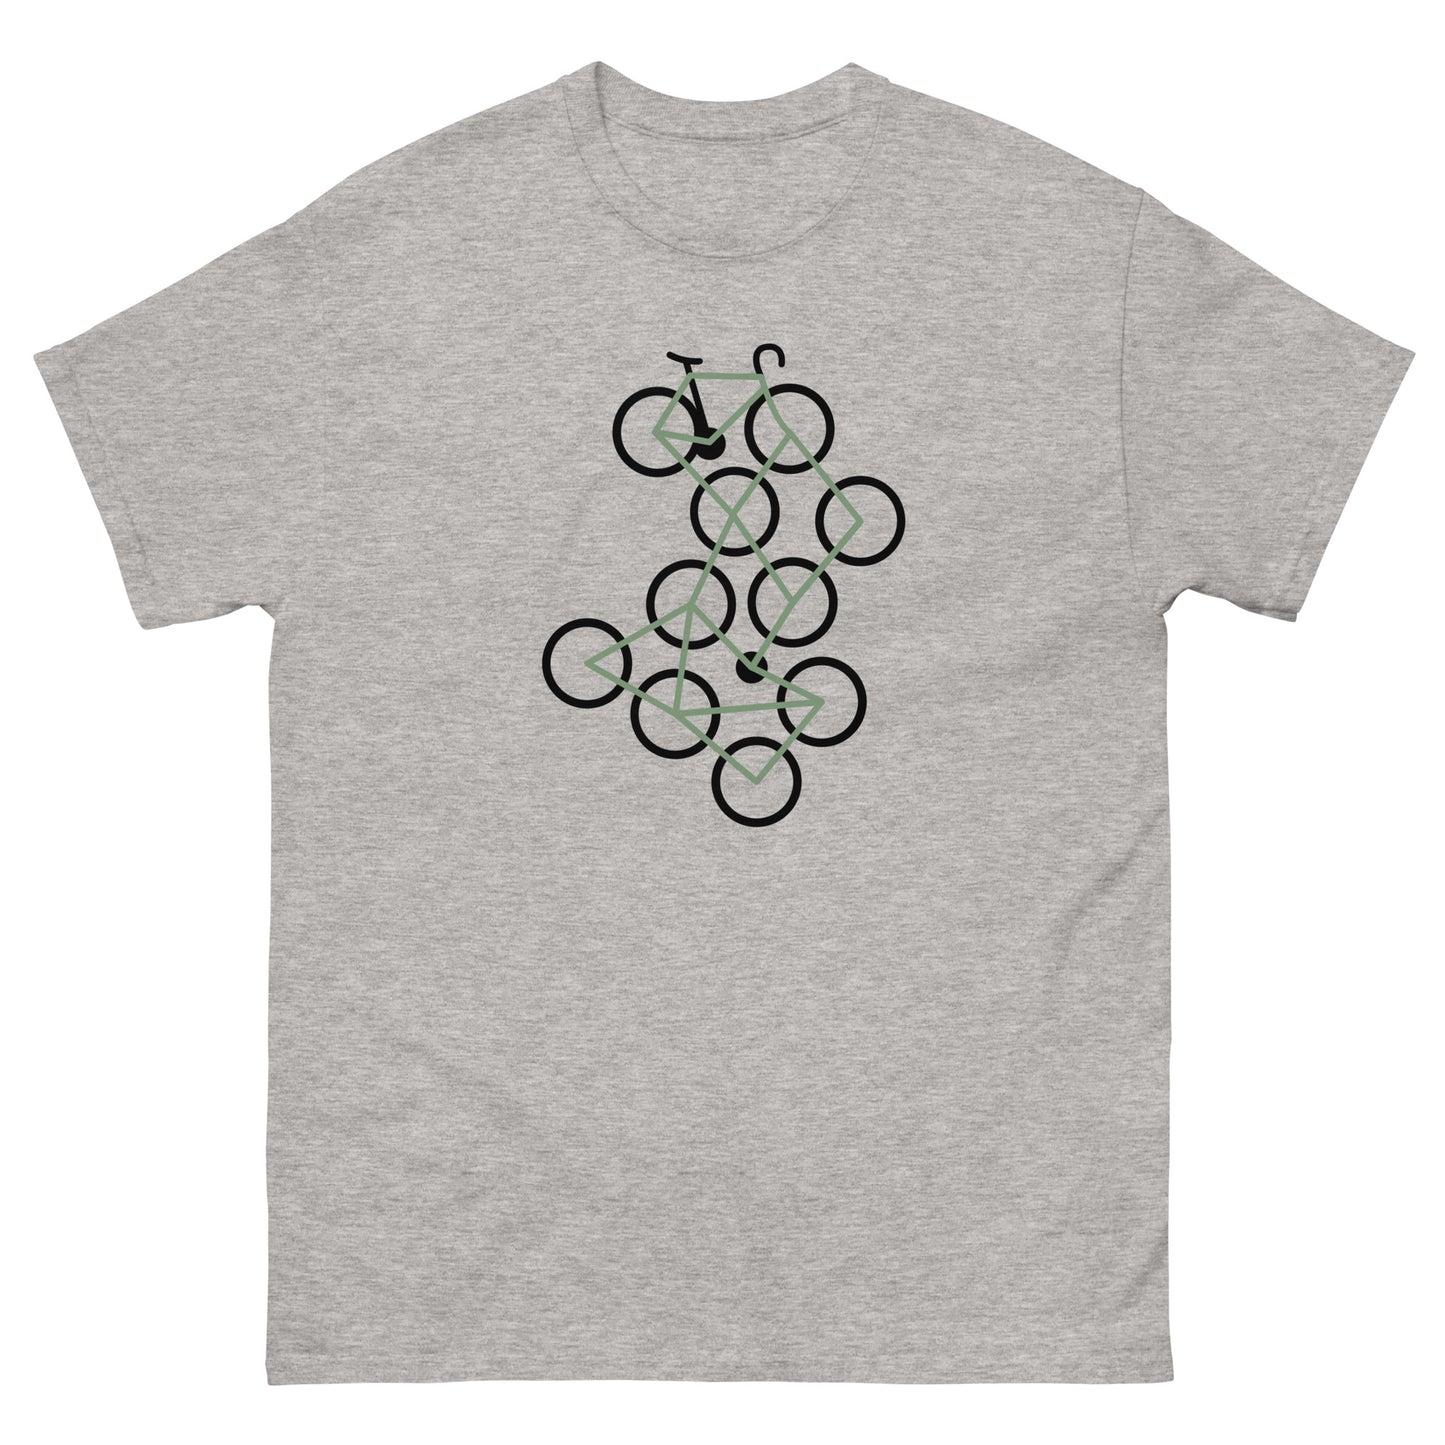 Bike Art Bike Men's Cycling Classic t shirt